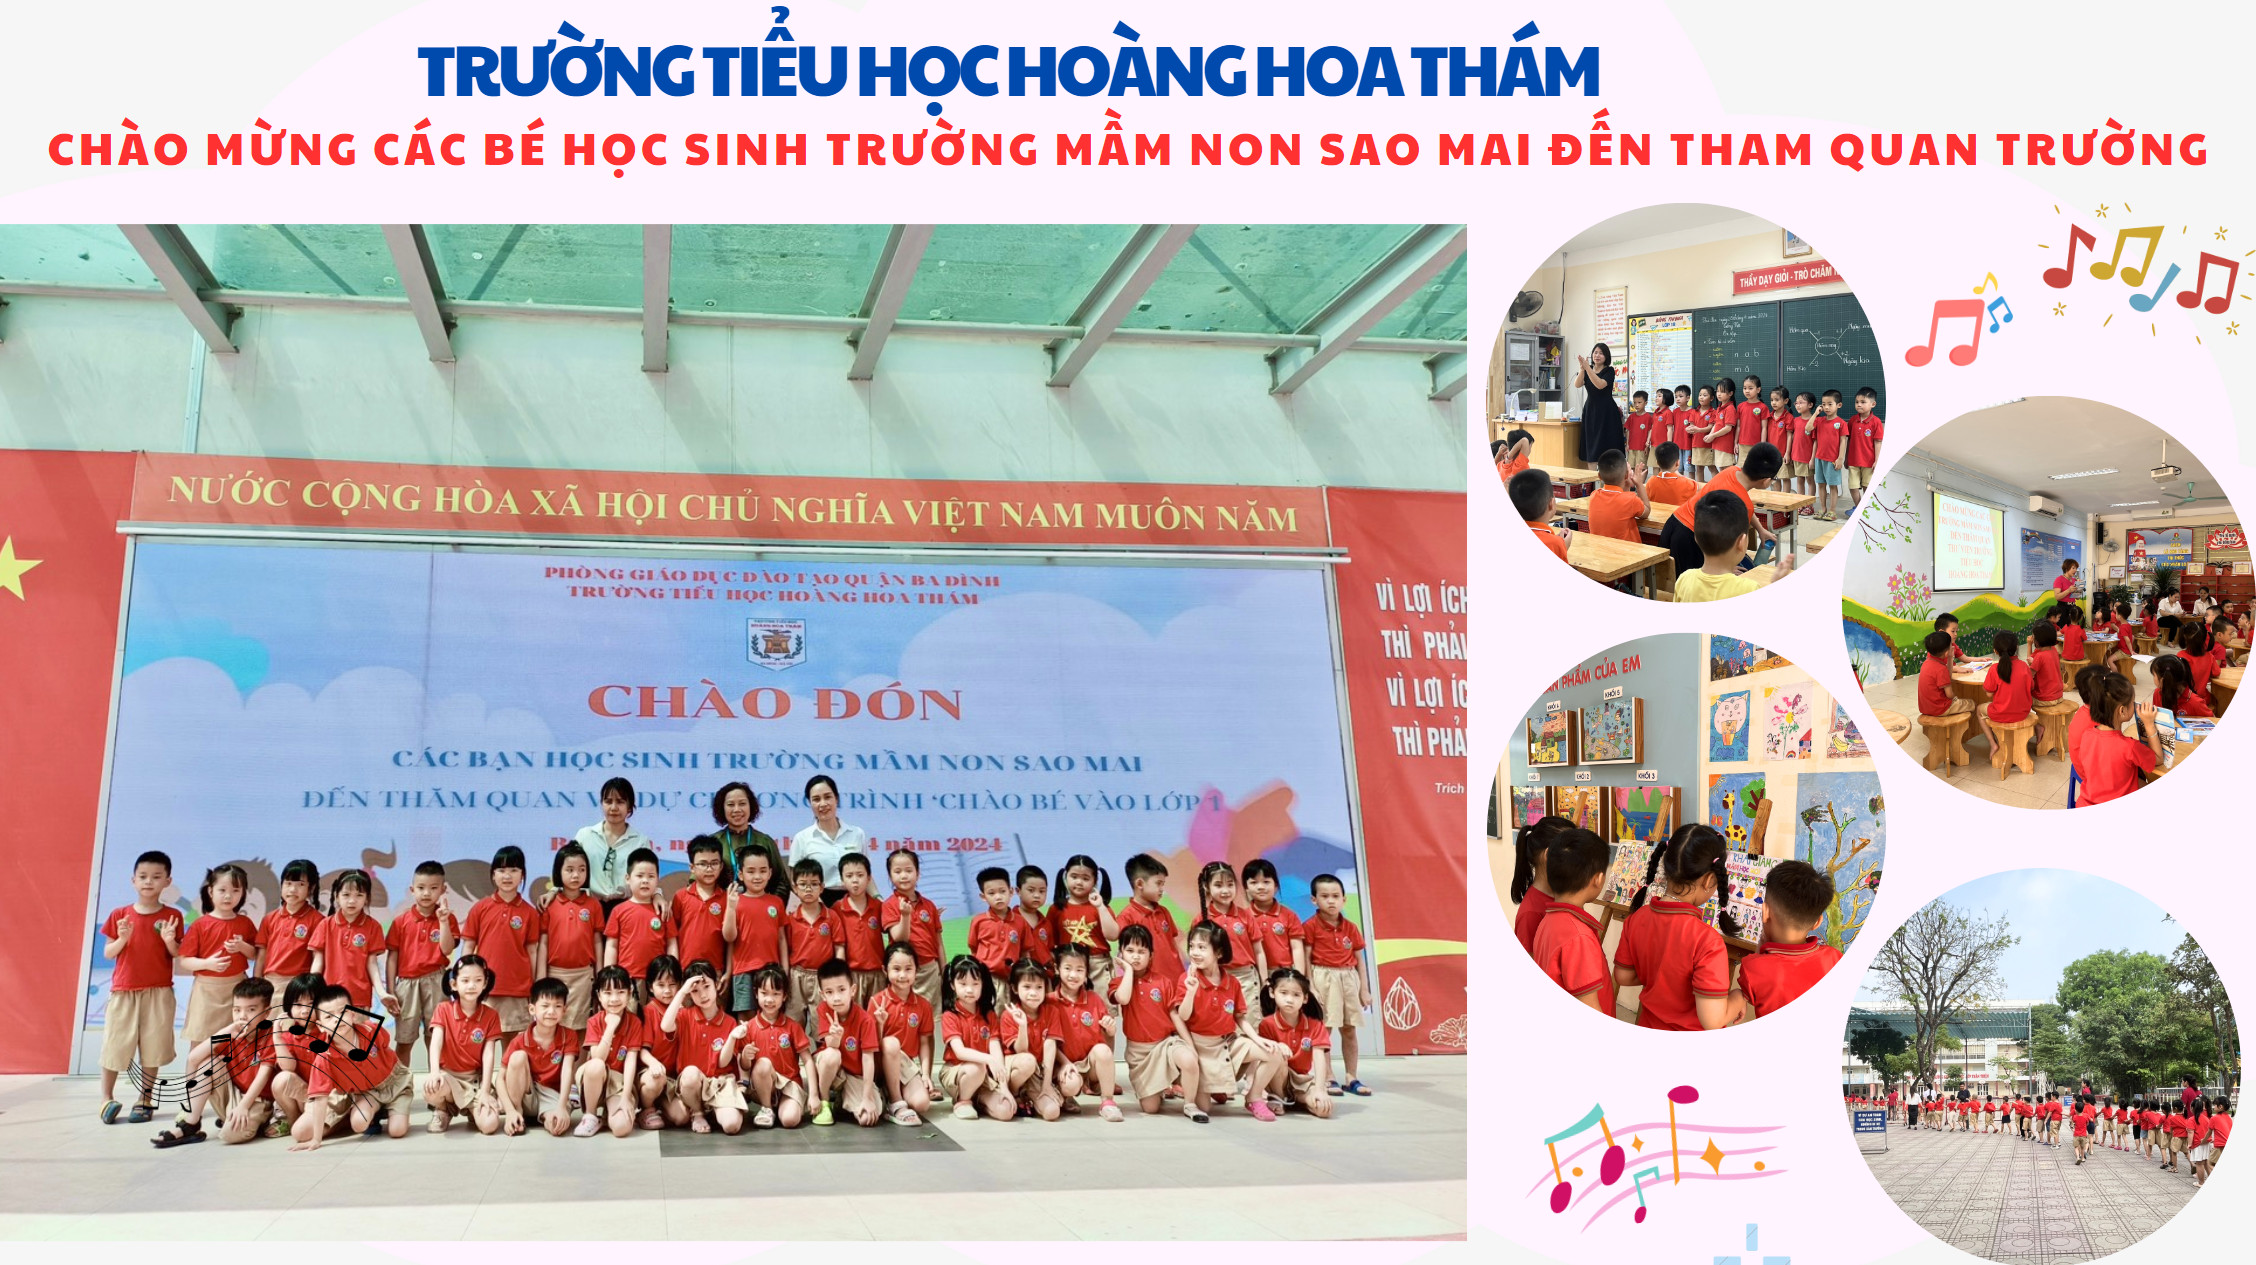 Trường Tiểu học Hoàng Hoa Thám chào đón các bé học sinh Mầm non  Sao Mai đến tham quan trải nghiệm